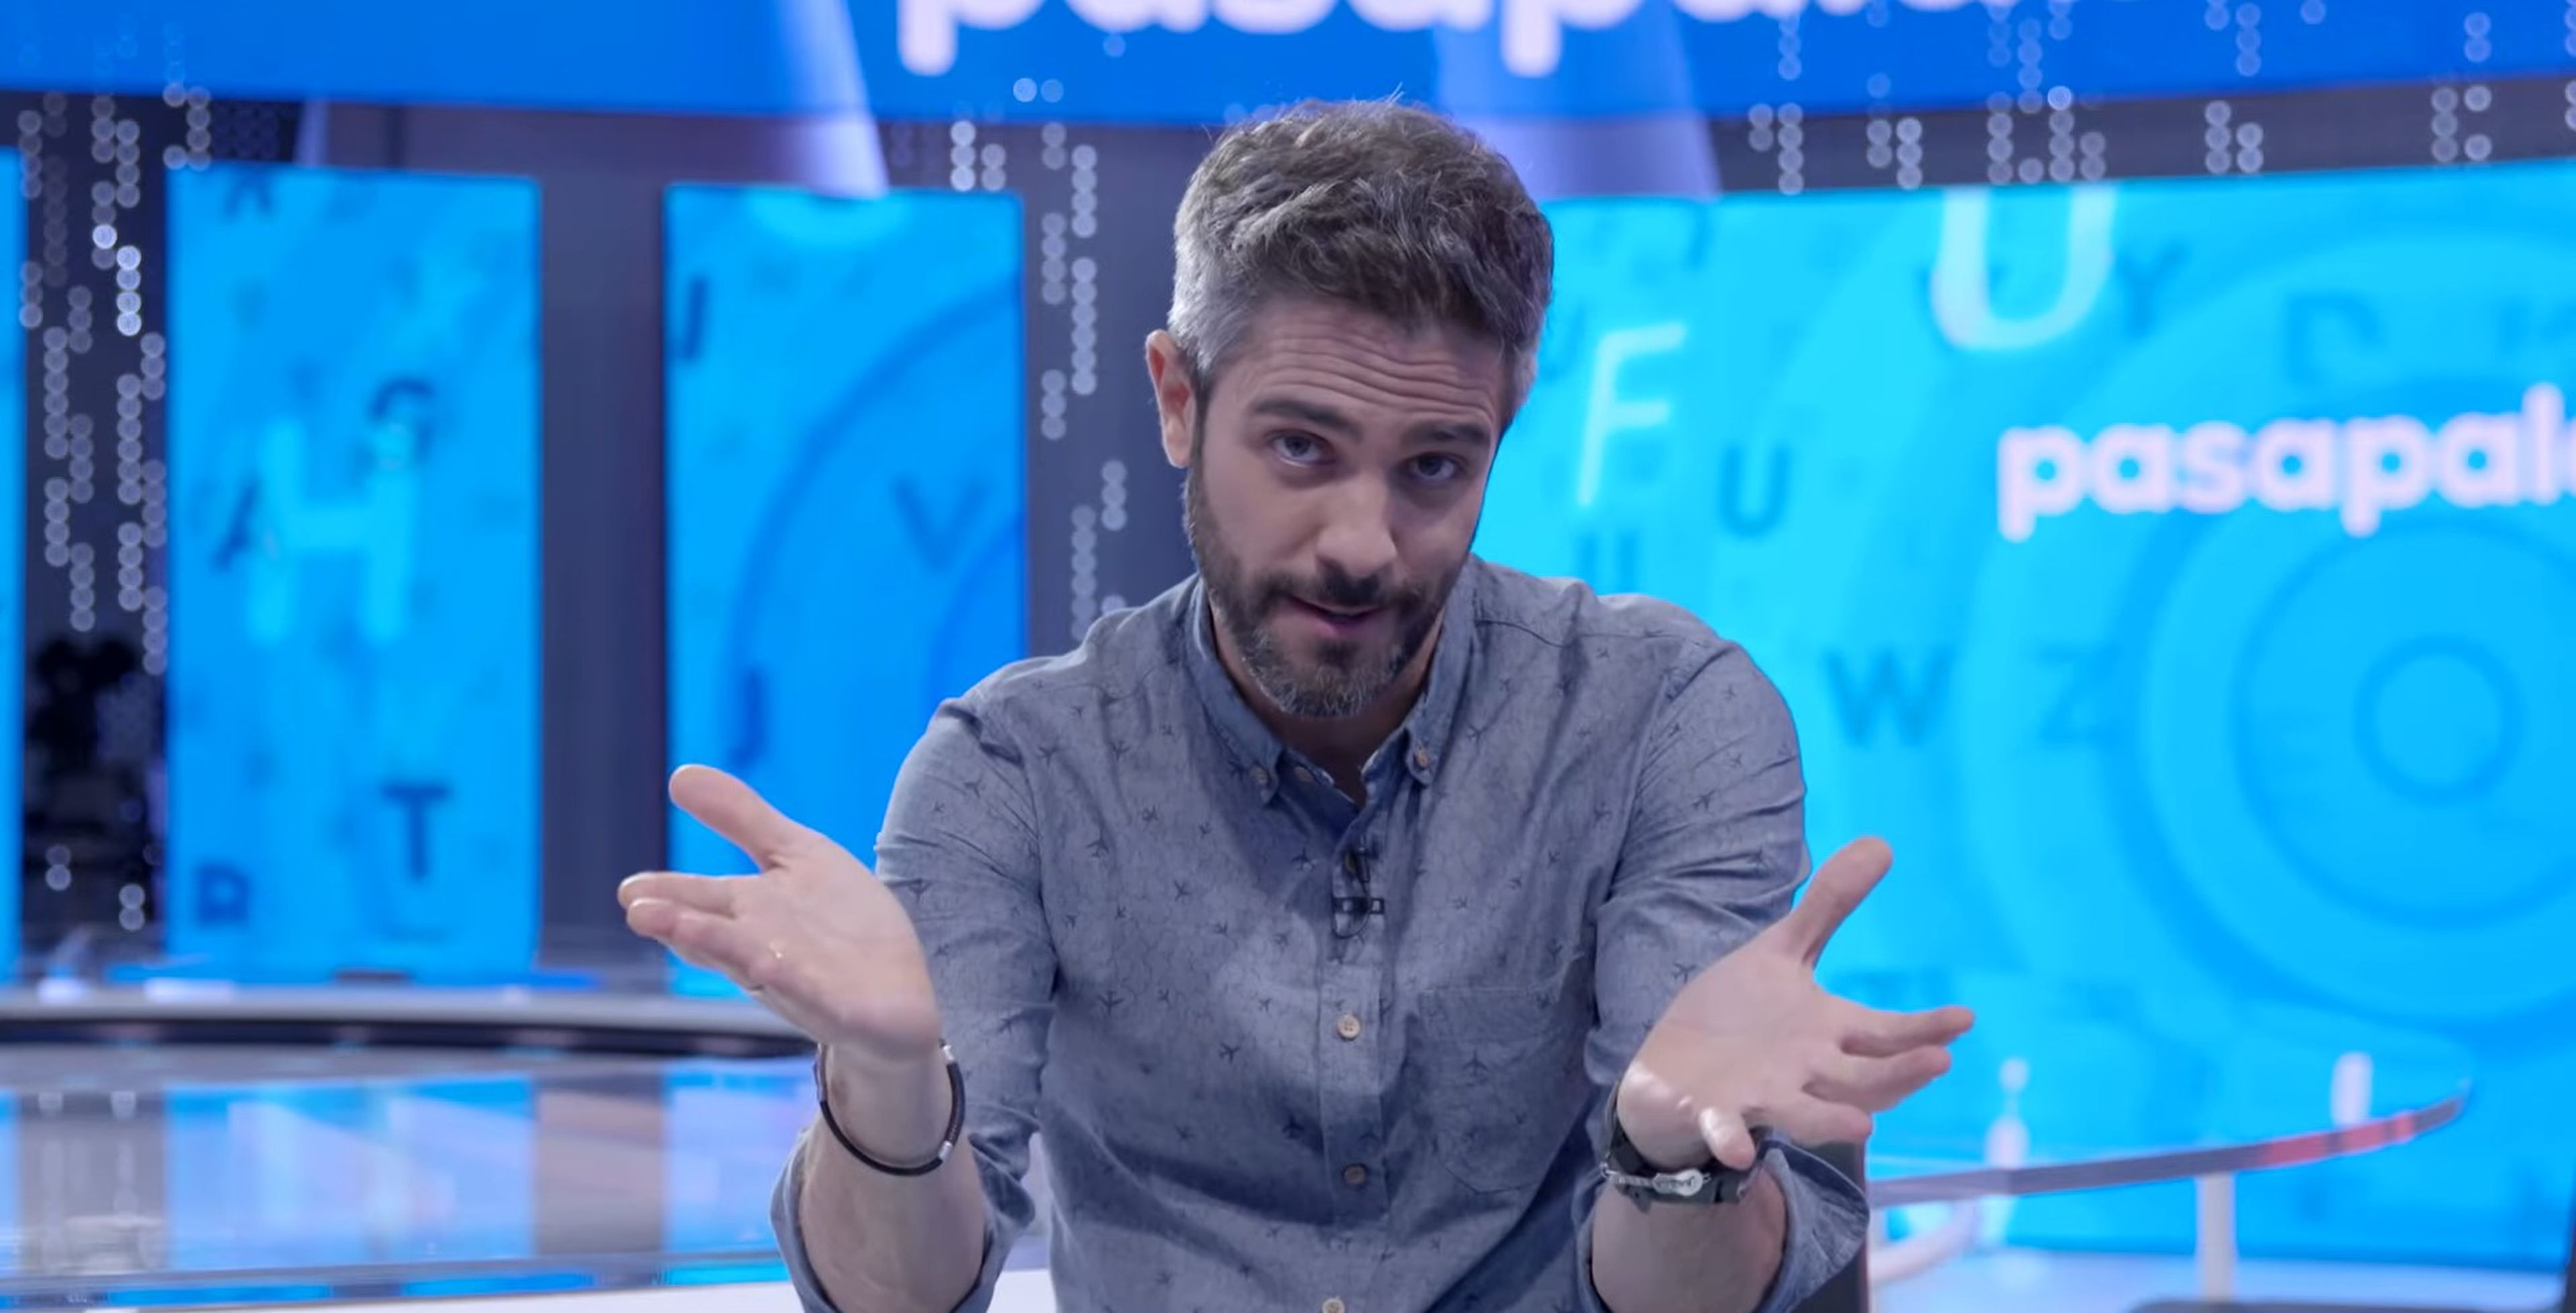 Roberto Leal presenta en Antena 3 el concurso Pasapalabra.